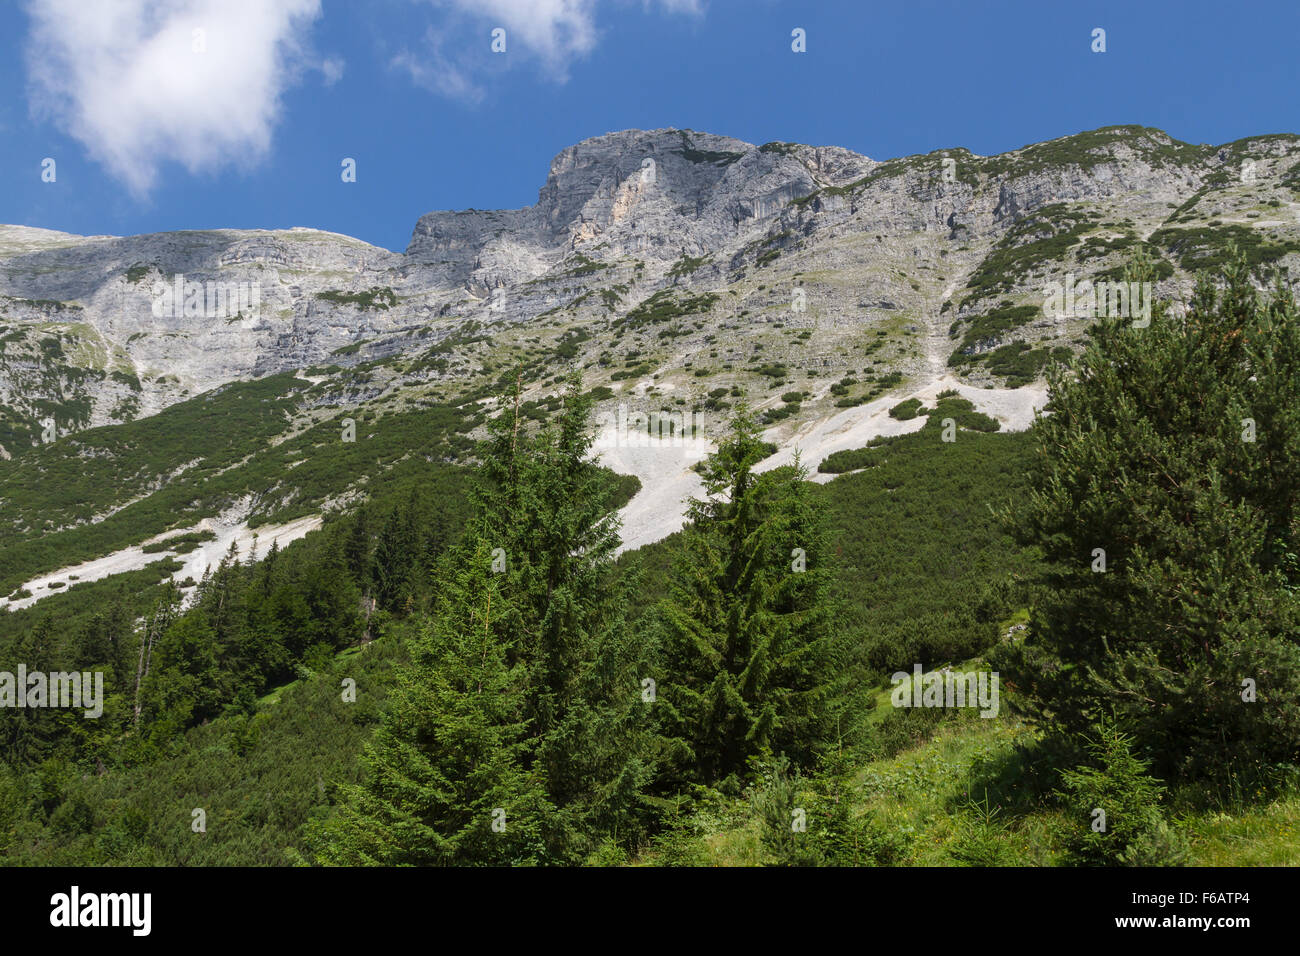 View at the Dogs Head Mountain. Austria, Tirol Stock Photo